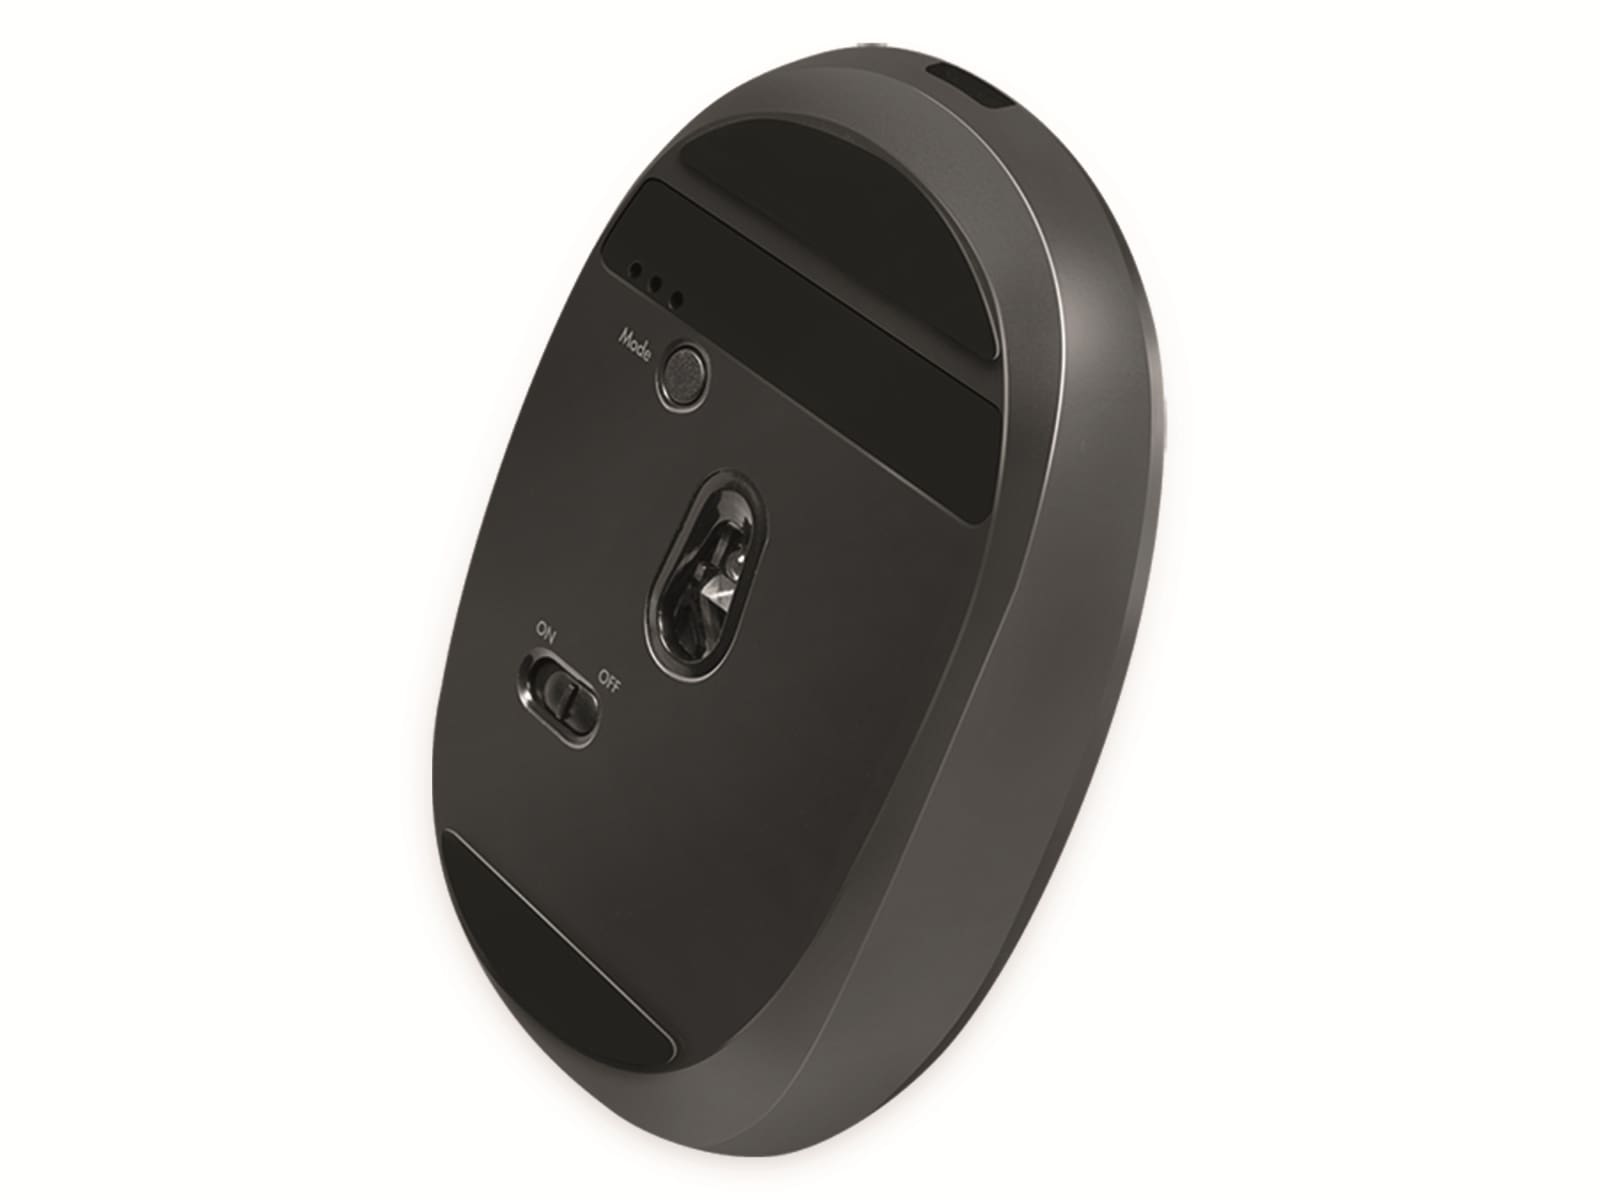 LOGILINK Bluetooth- und Funkmaus ID0204, Dual-Mode, schwarz